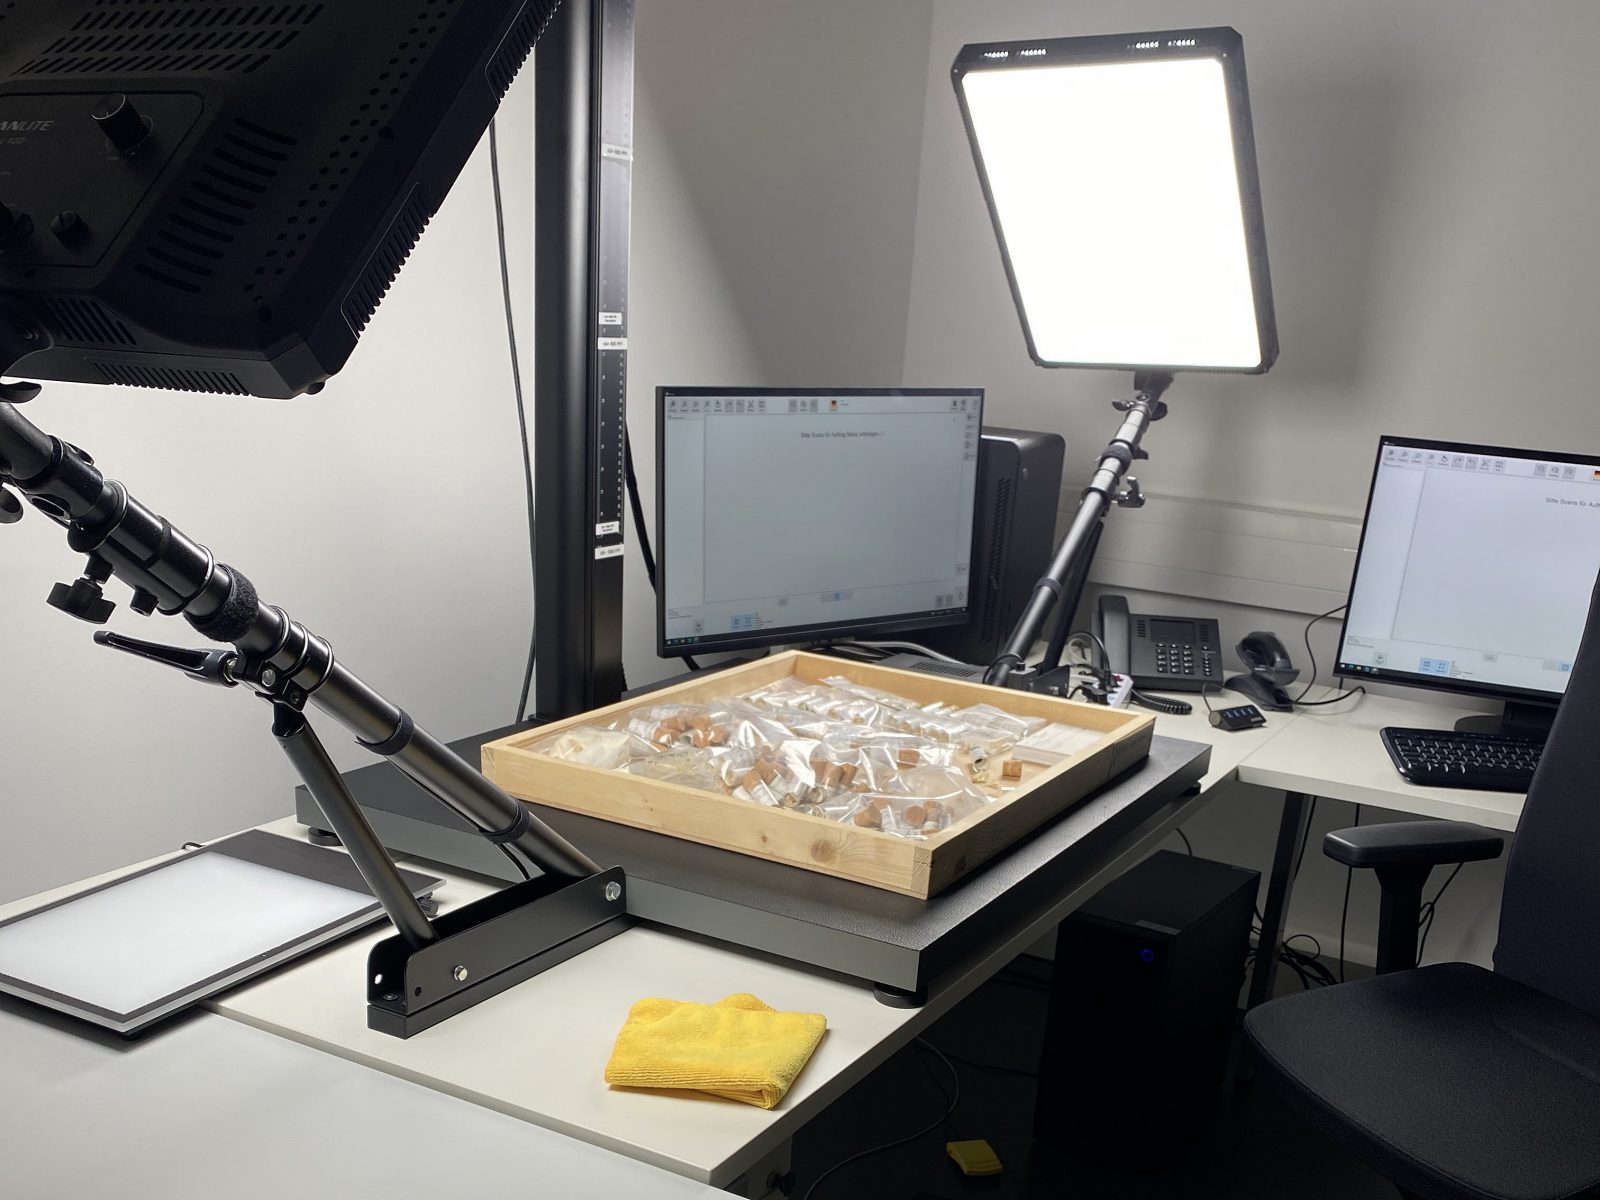 Die Schublade mit Kleinsäugerschädeln liegt zum Fotografieren bereit auf einer Arbeitsplatte unterhalb der Kamera, während sie von zwei flachen Lampen angeleuchtet wird und im Hintergund sind zwei Computerbildschirme.